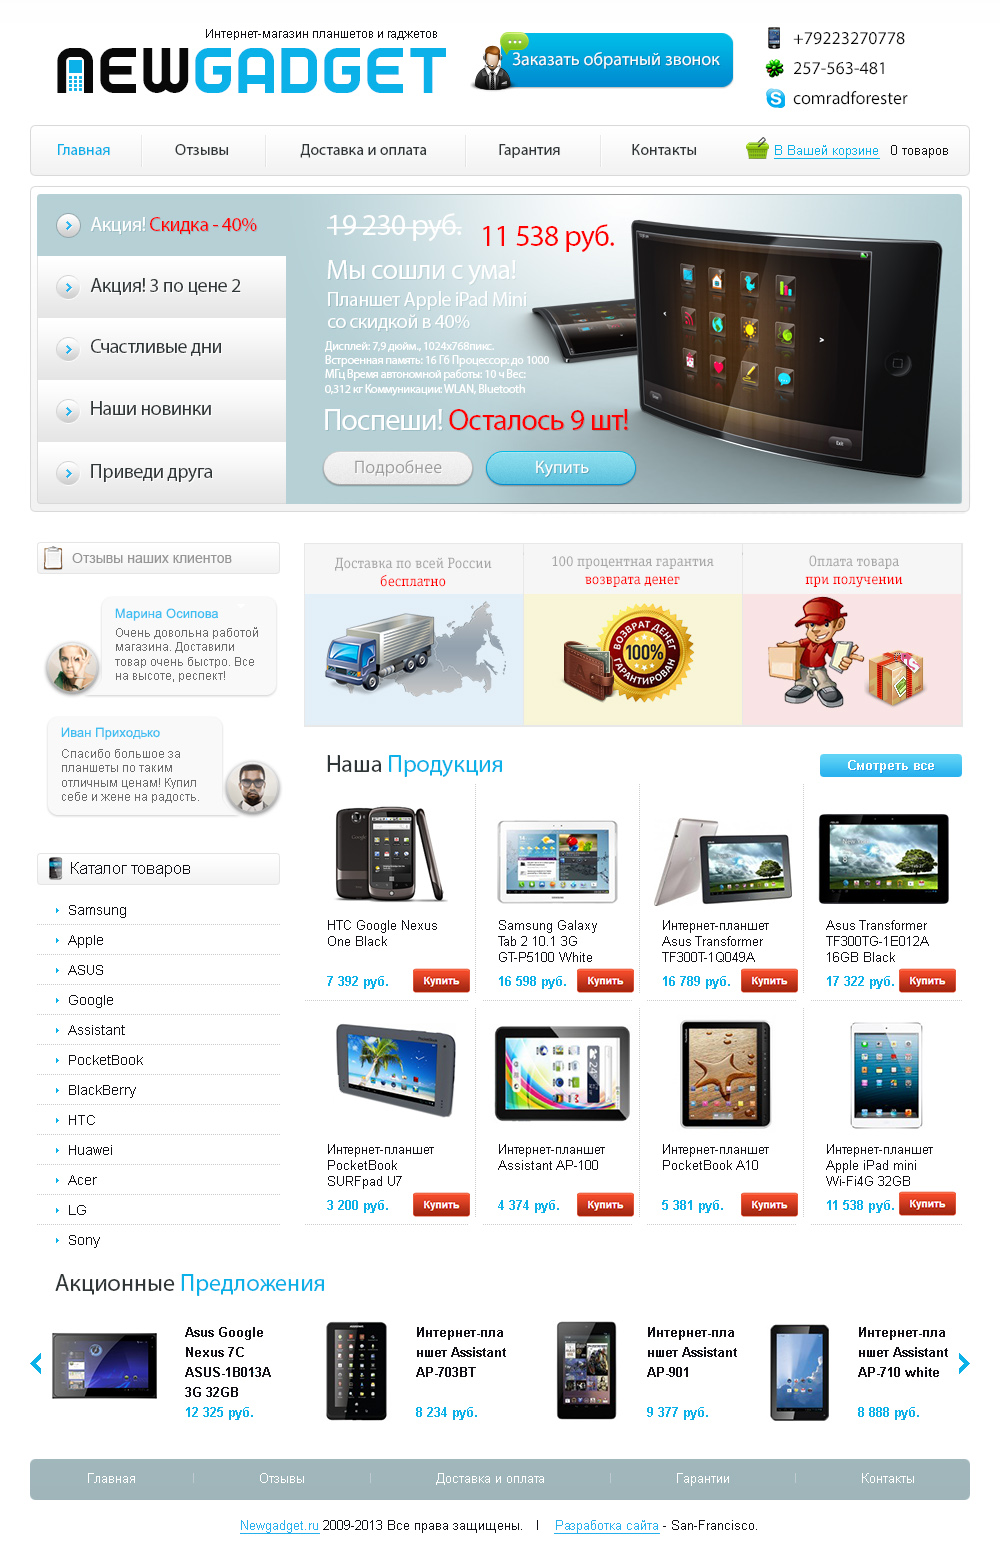 Интернет-магазин планшетов newgadget5.com